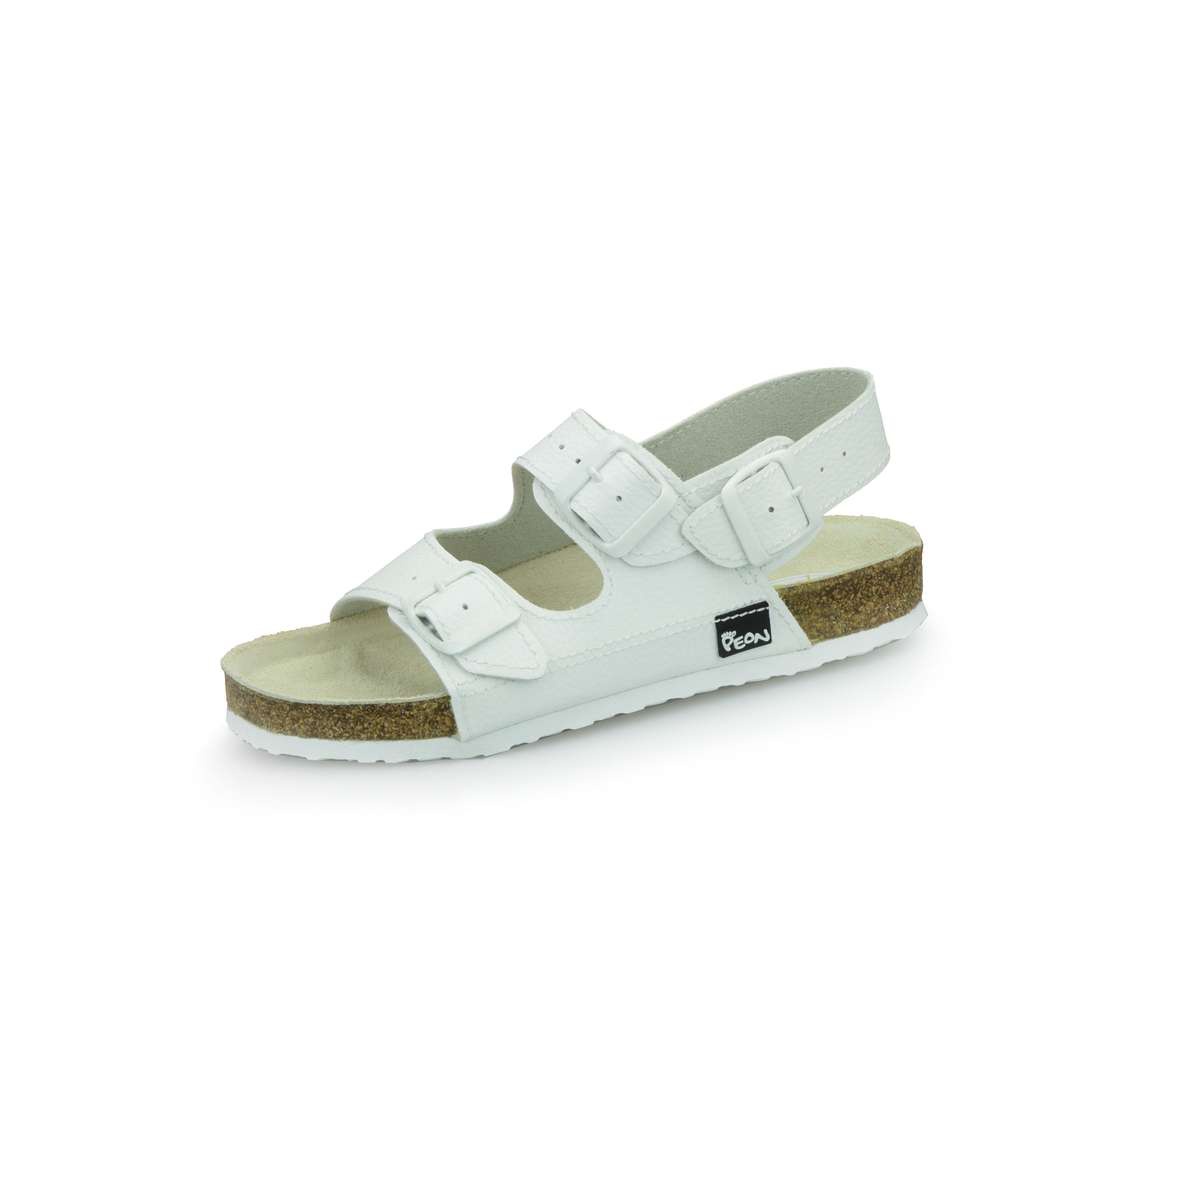 PEON PE/131-5 bílé dámské zdravotní korkové sandále BARVA: BÍLÁ, VELIKOST: 39